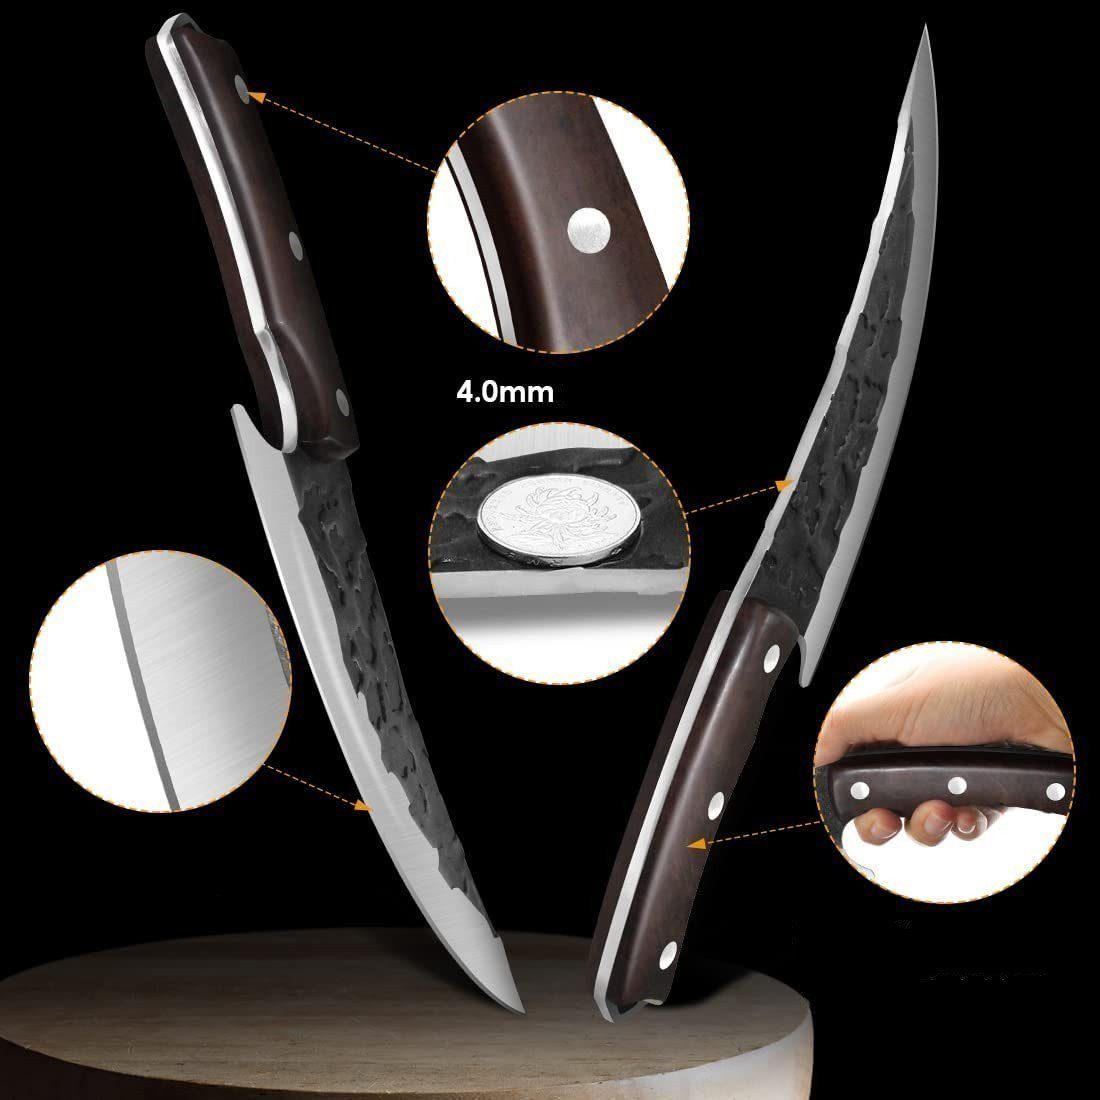 KingLux Ausbeinmesser Handgeschmiedete Hackmesser Küchenmesser Messer Wikinger